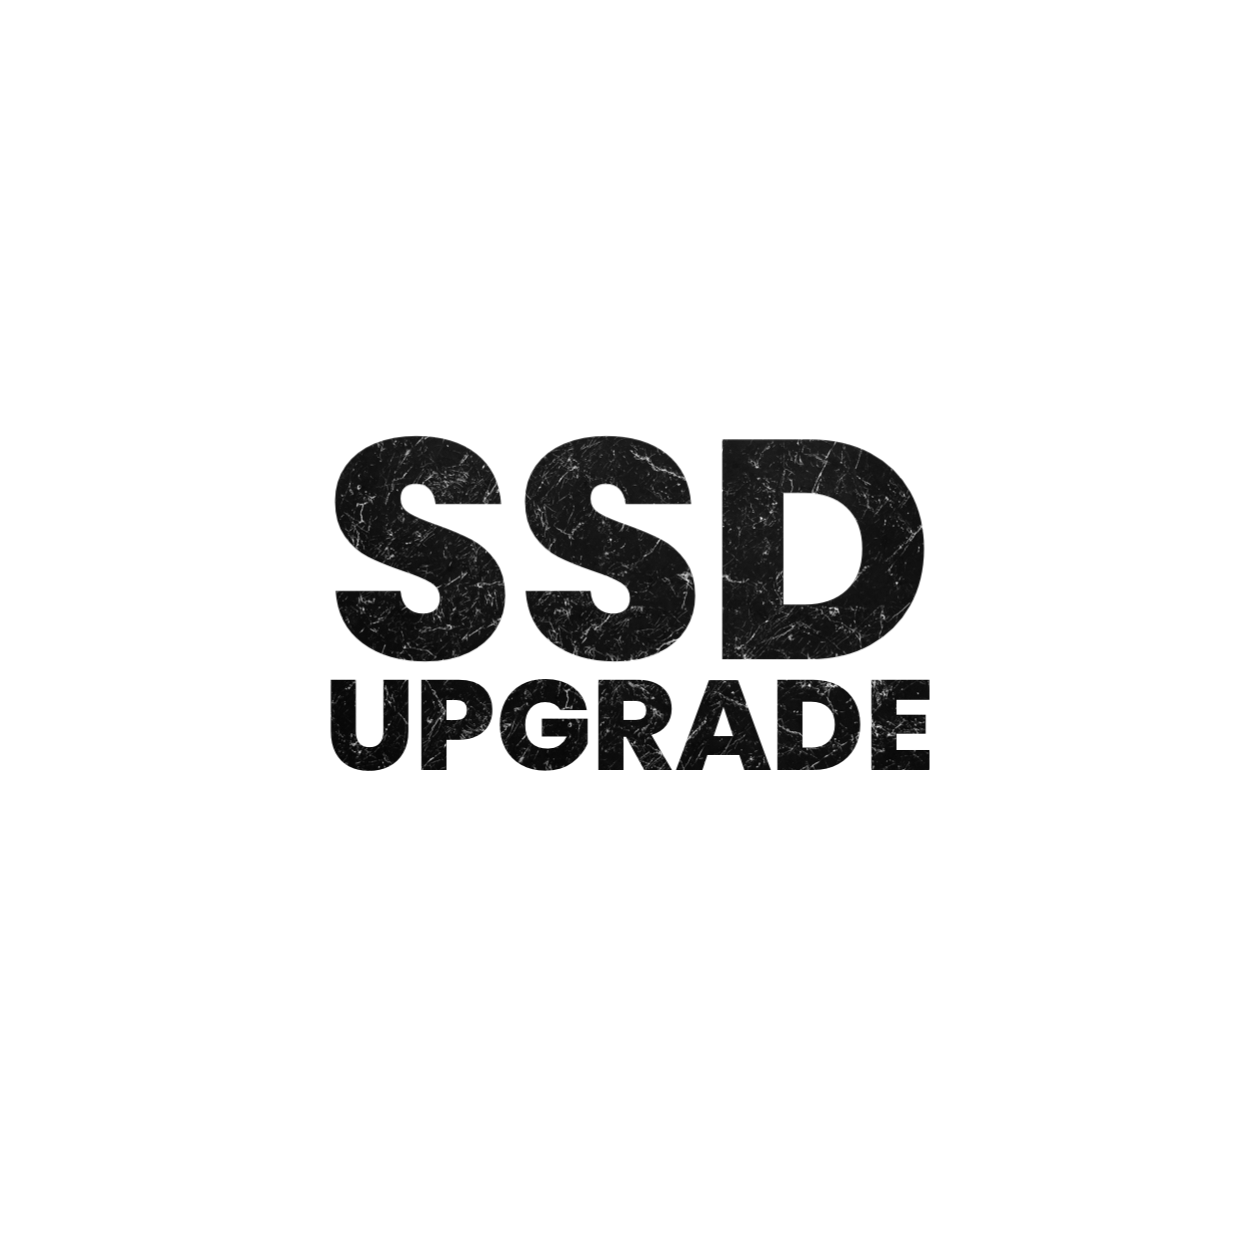 SSD UPGRADE